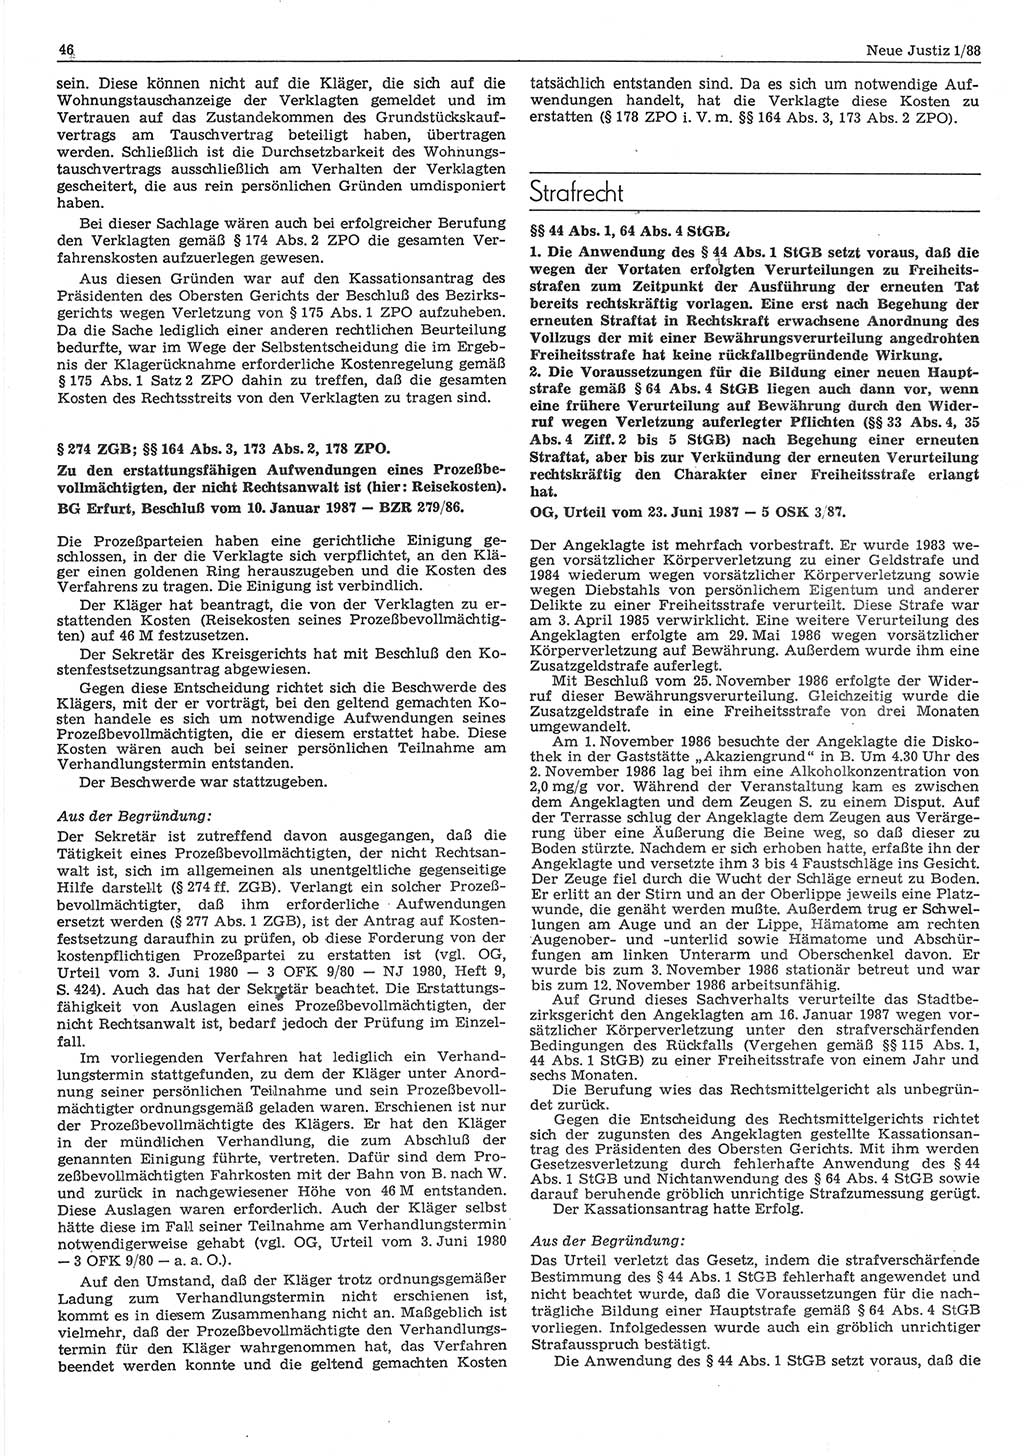 Neue Justiz (NJ), Zeitschrift für sozialistisches Recht und Gesetzlichkeit [Deutsche Demokratische Republik (DDR)], 42. Jahrgang 1988, Seite 46 (NJ DDR 1988, S. 46)